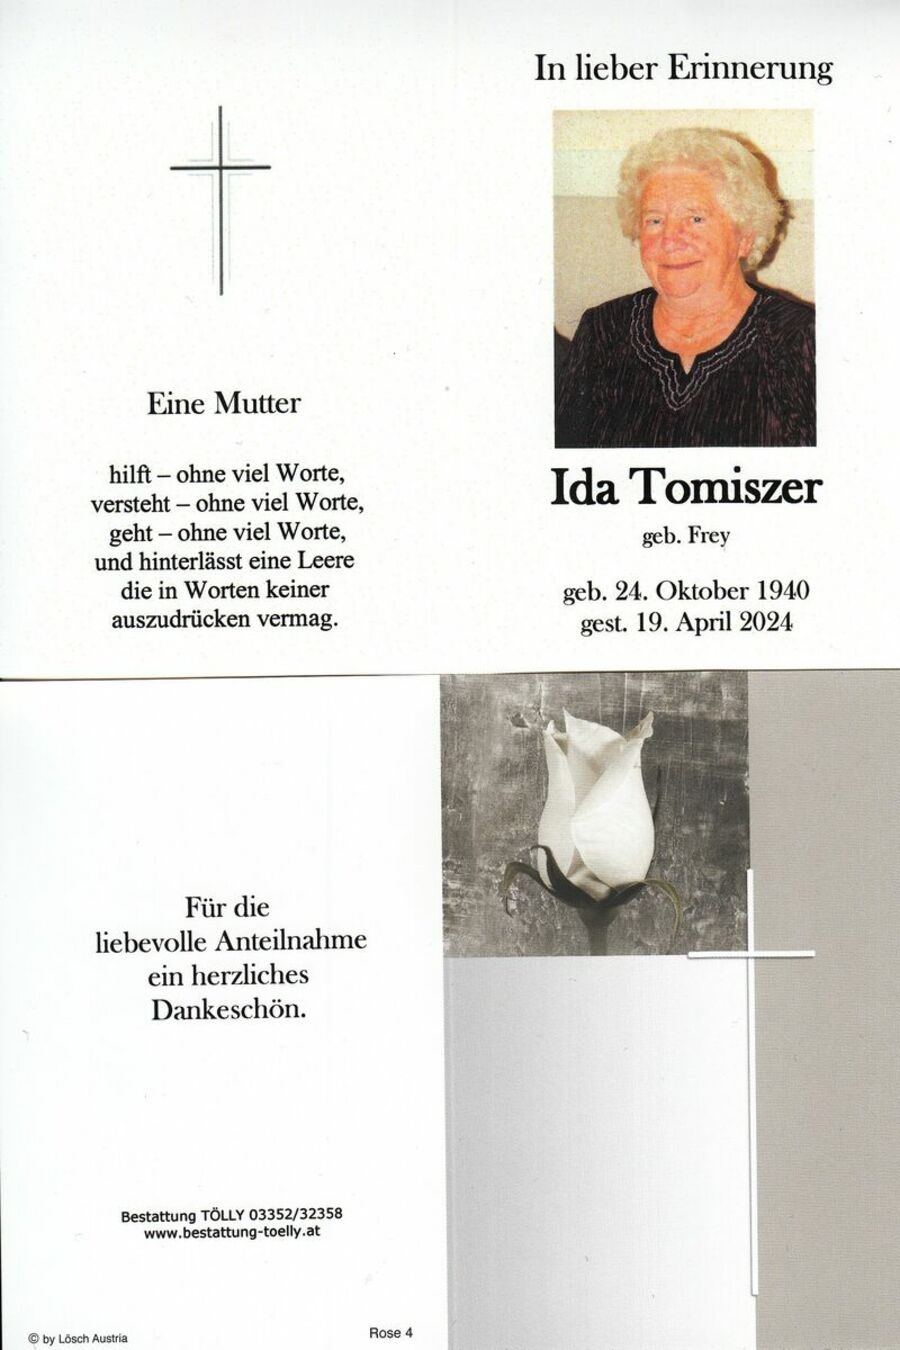 Gedenkkarte Ida Tomiszer